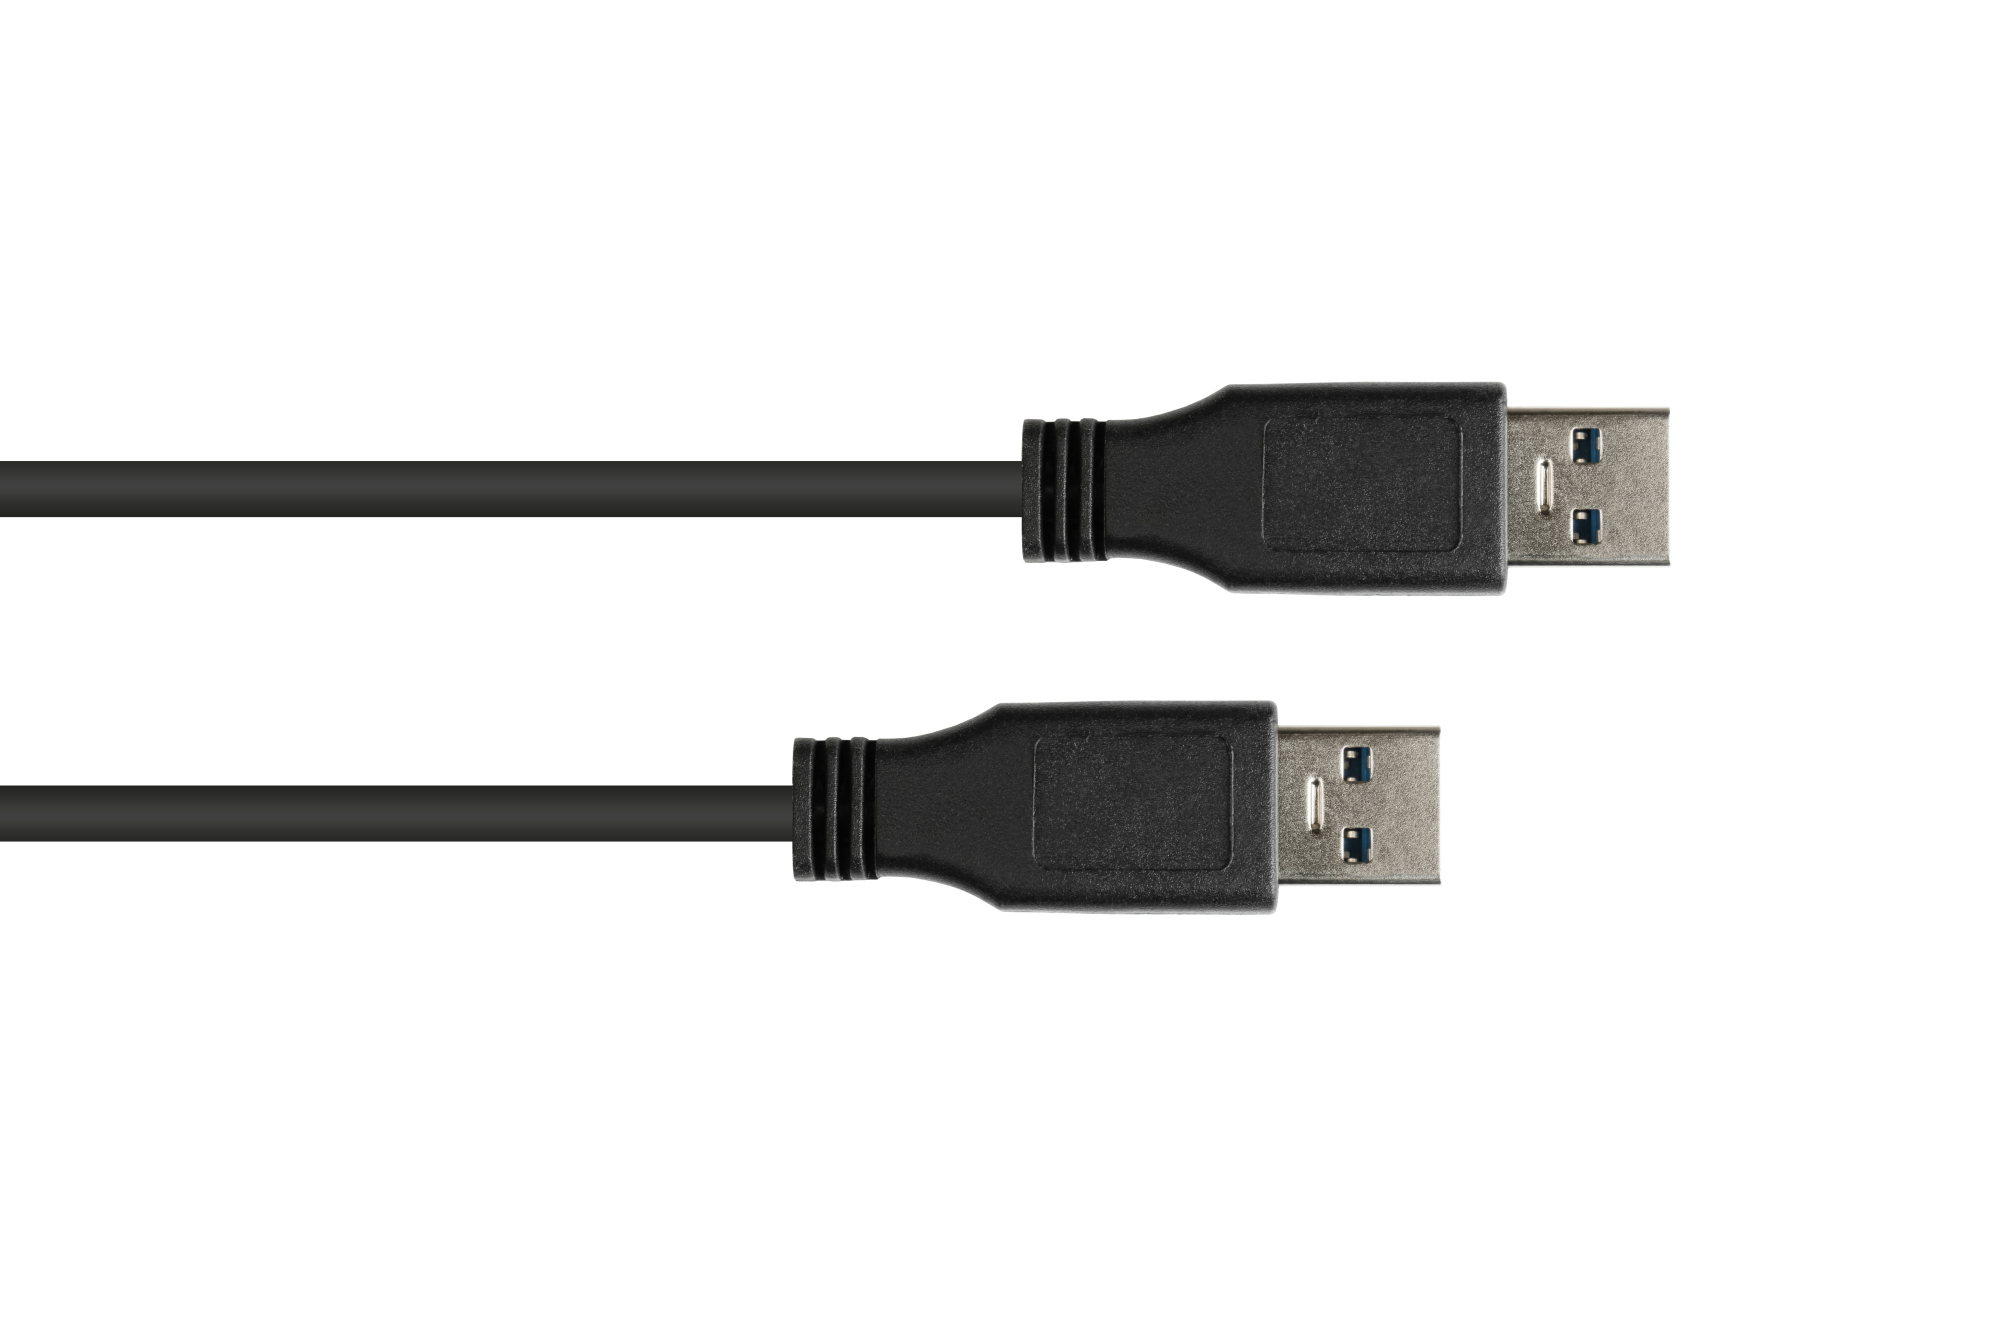 Anschlusskabel USB 3.0 Stecker A an Stecker A, schwarz, 1m, Good Connections®